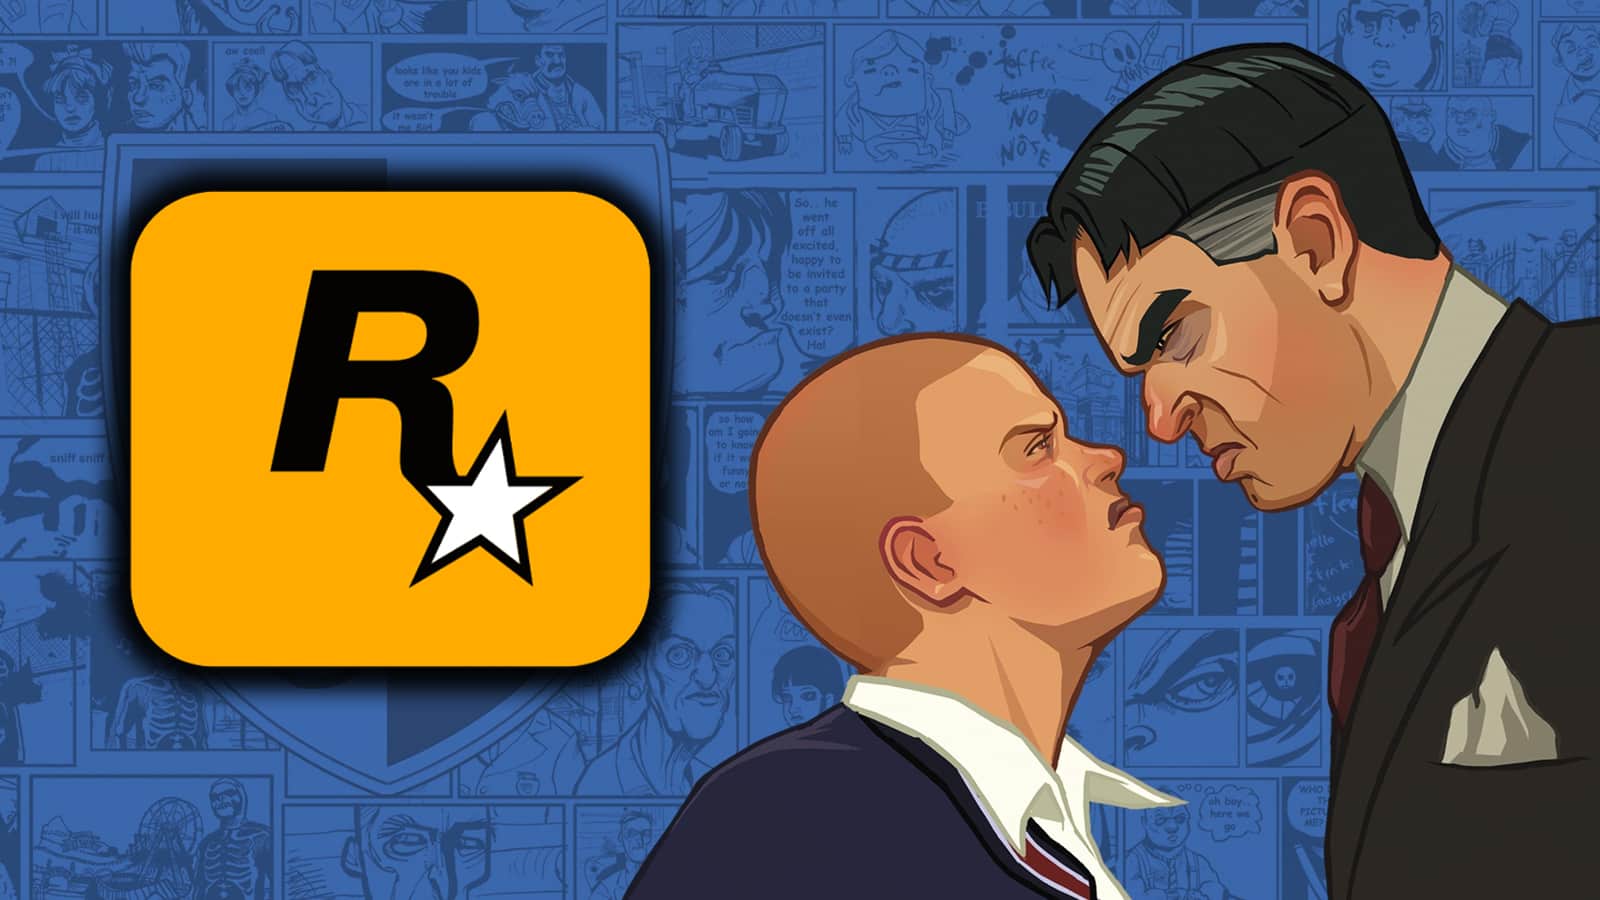 Bully 2™  Rockstar Games Original 